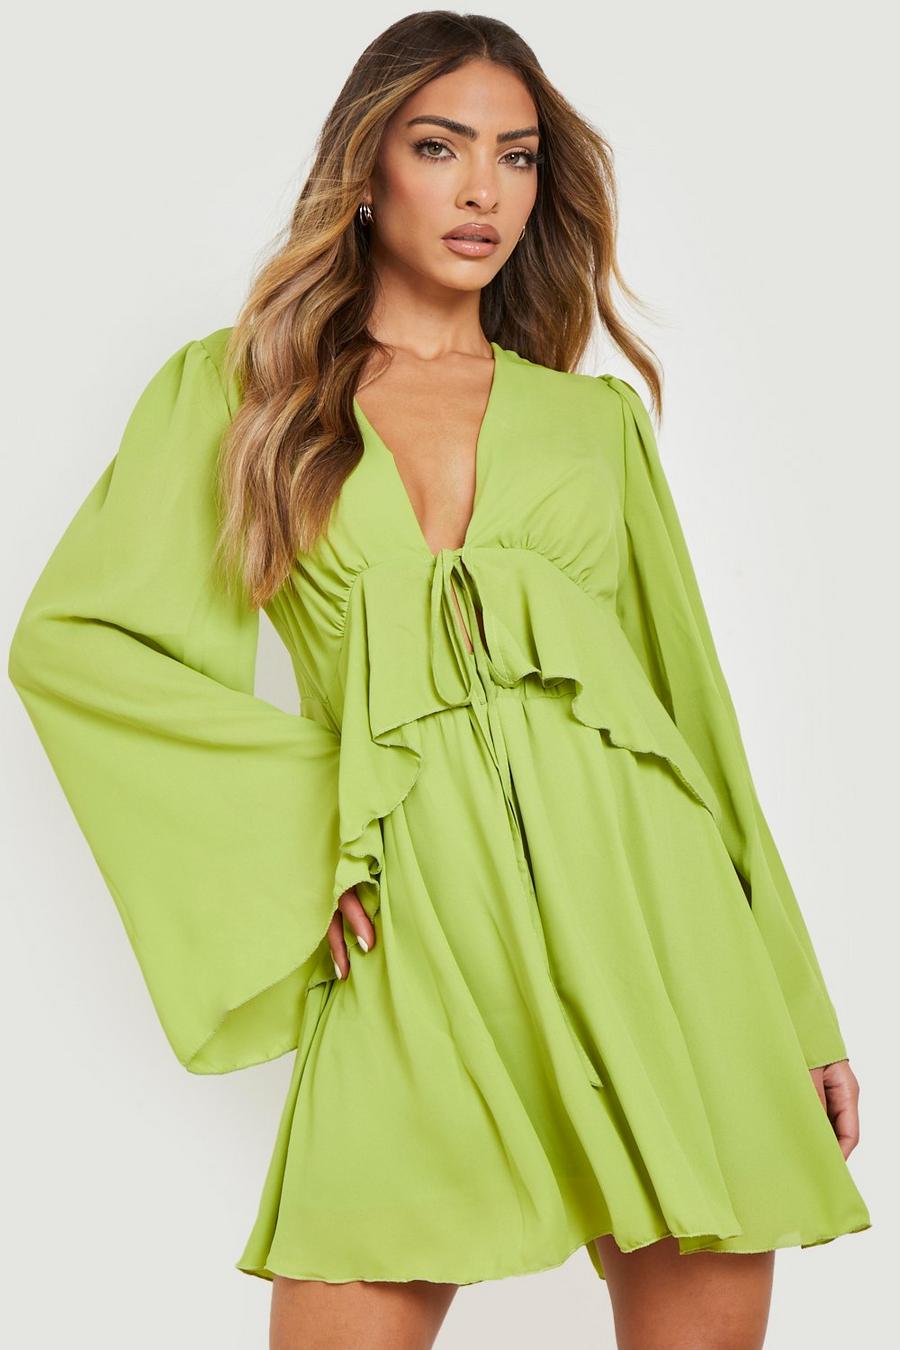 Ensemble avec blouse volantée à attaches et mini-jupe, Lime vert